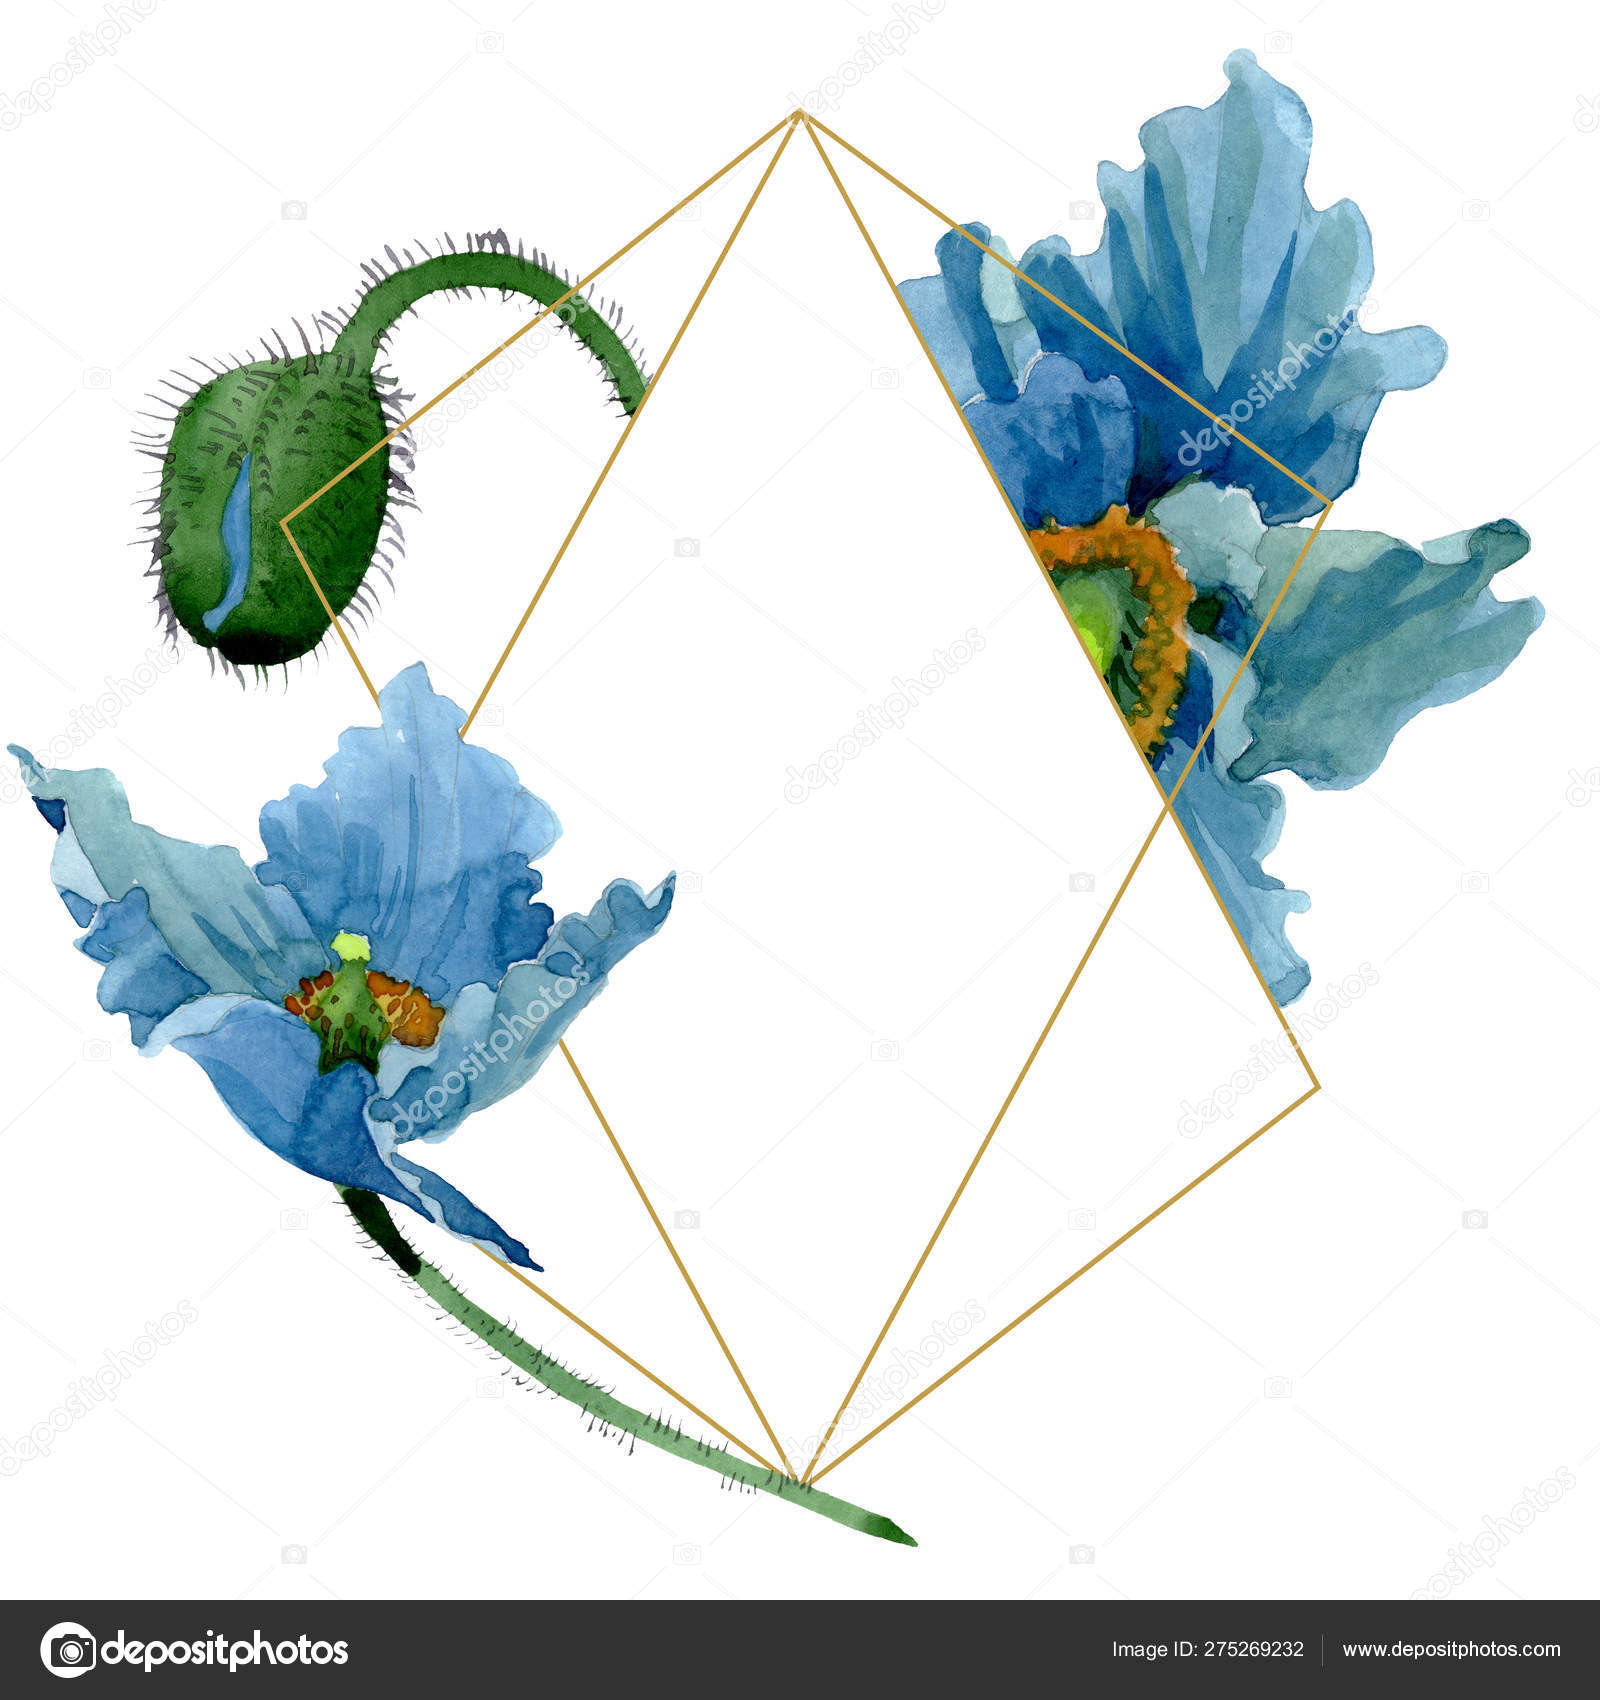 blue-poppy-floral-botanical-flowers-watercolor-background-illustration-set-frame-border